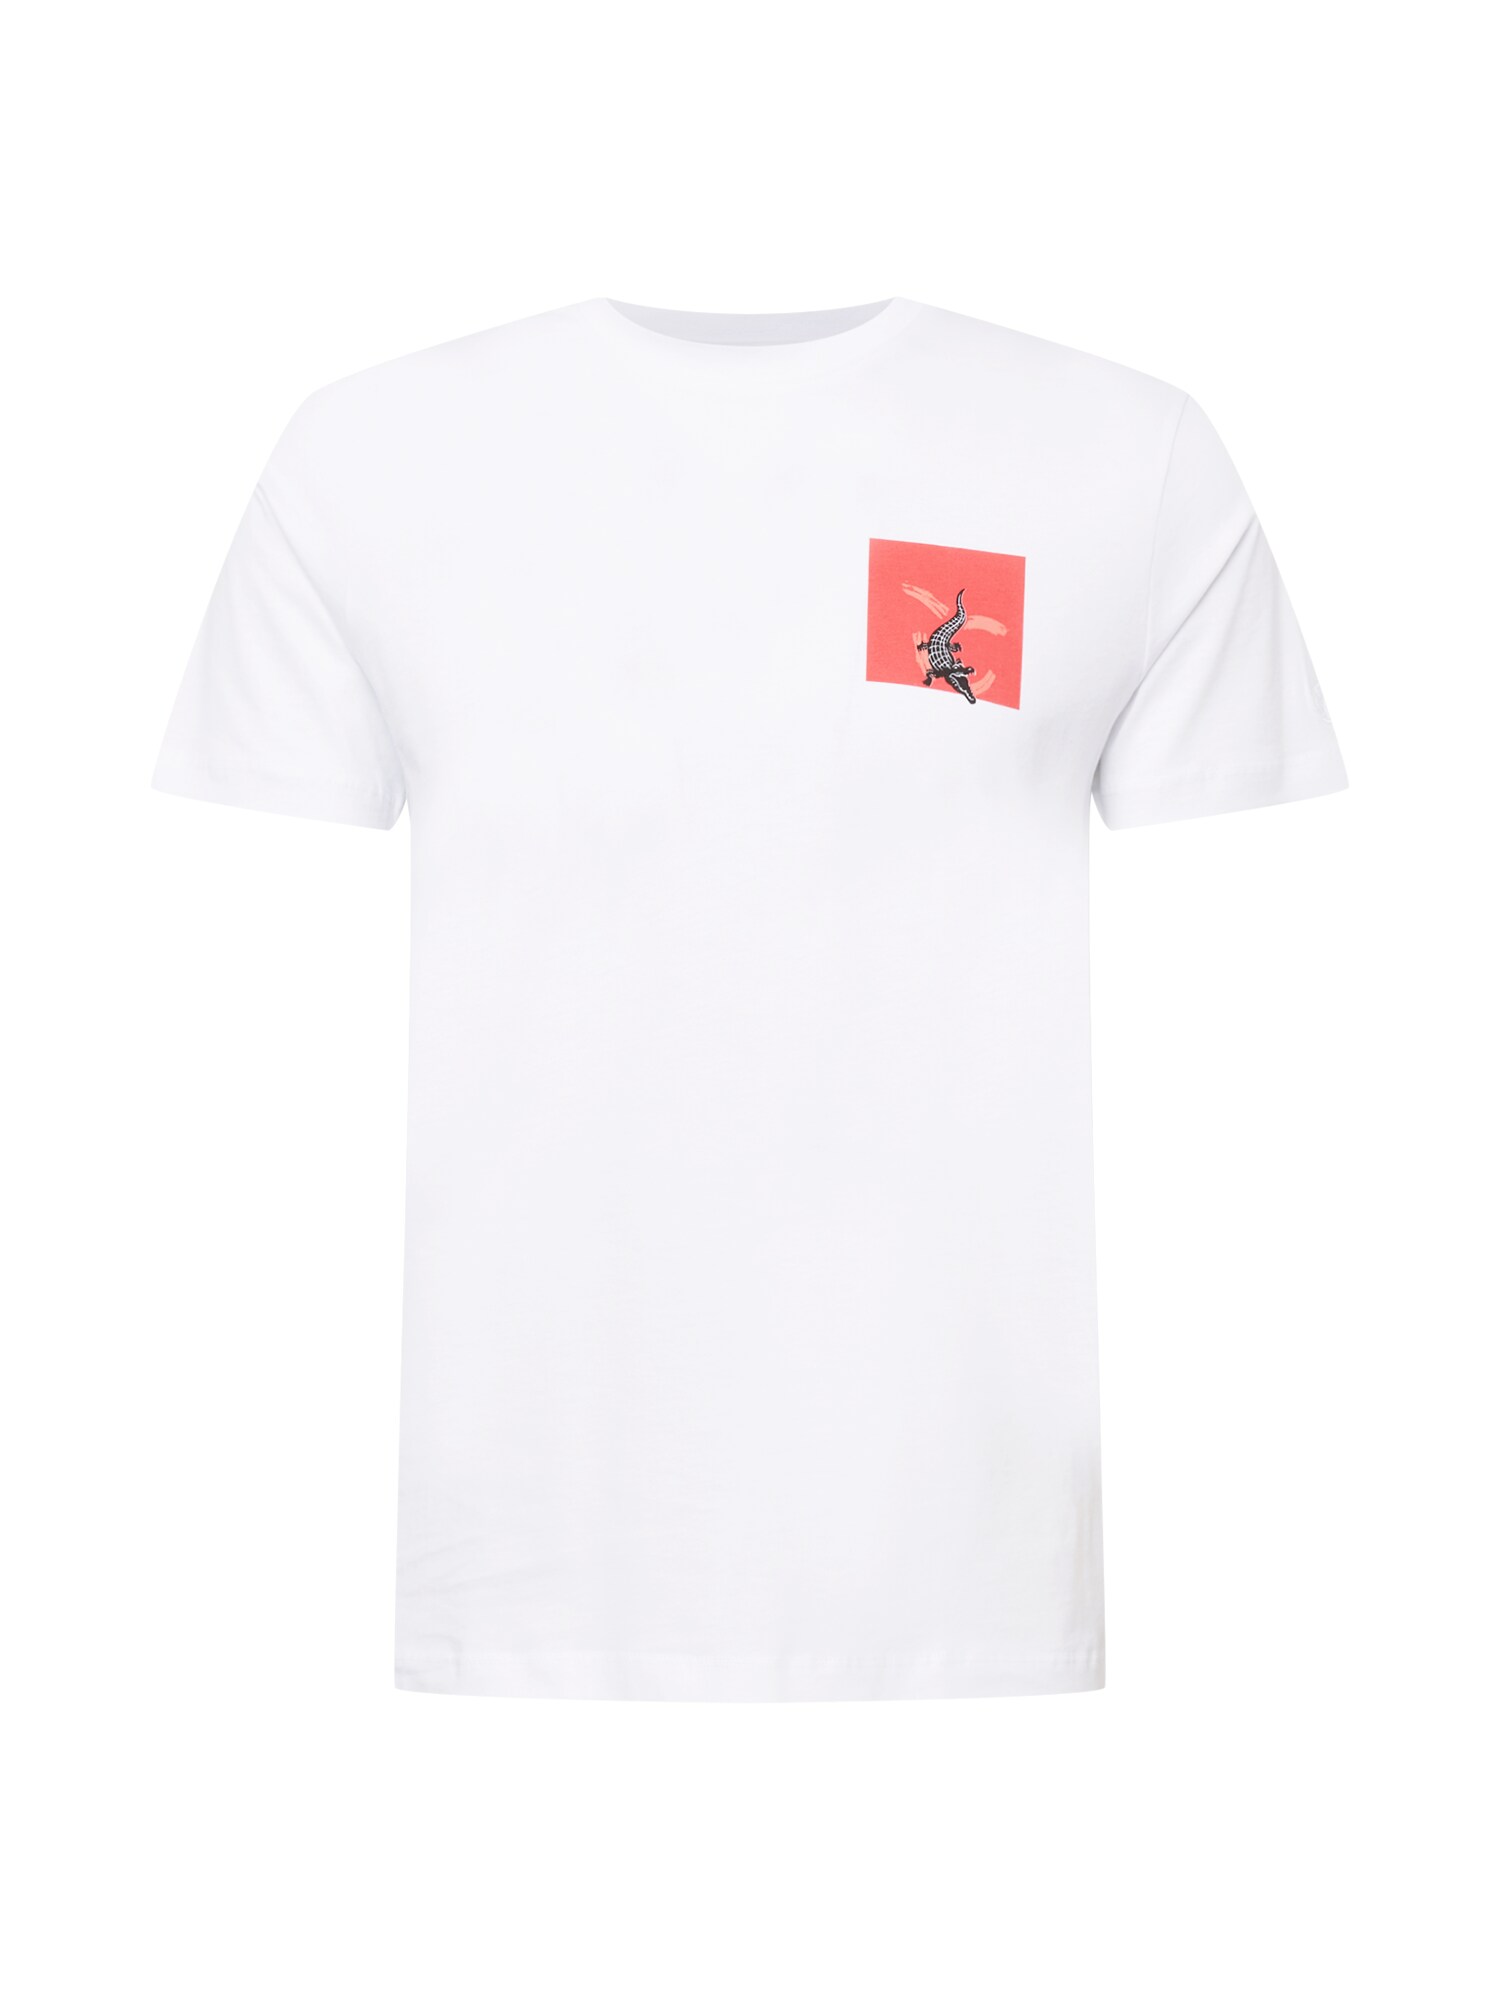 WESTMARK LONDON Marškinėliai balta / raudona / juoda / lašišų spalva